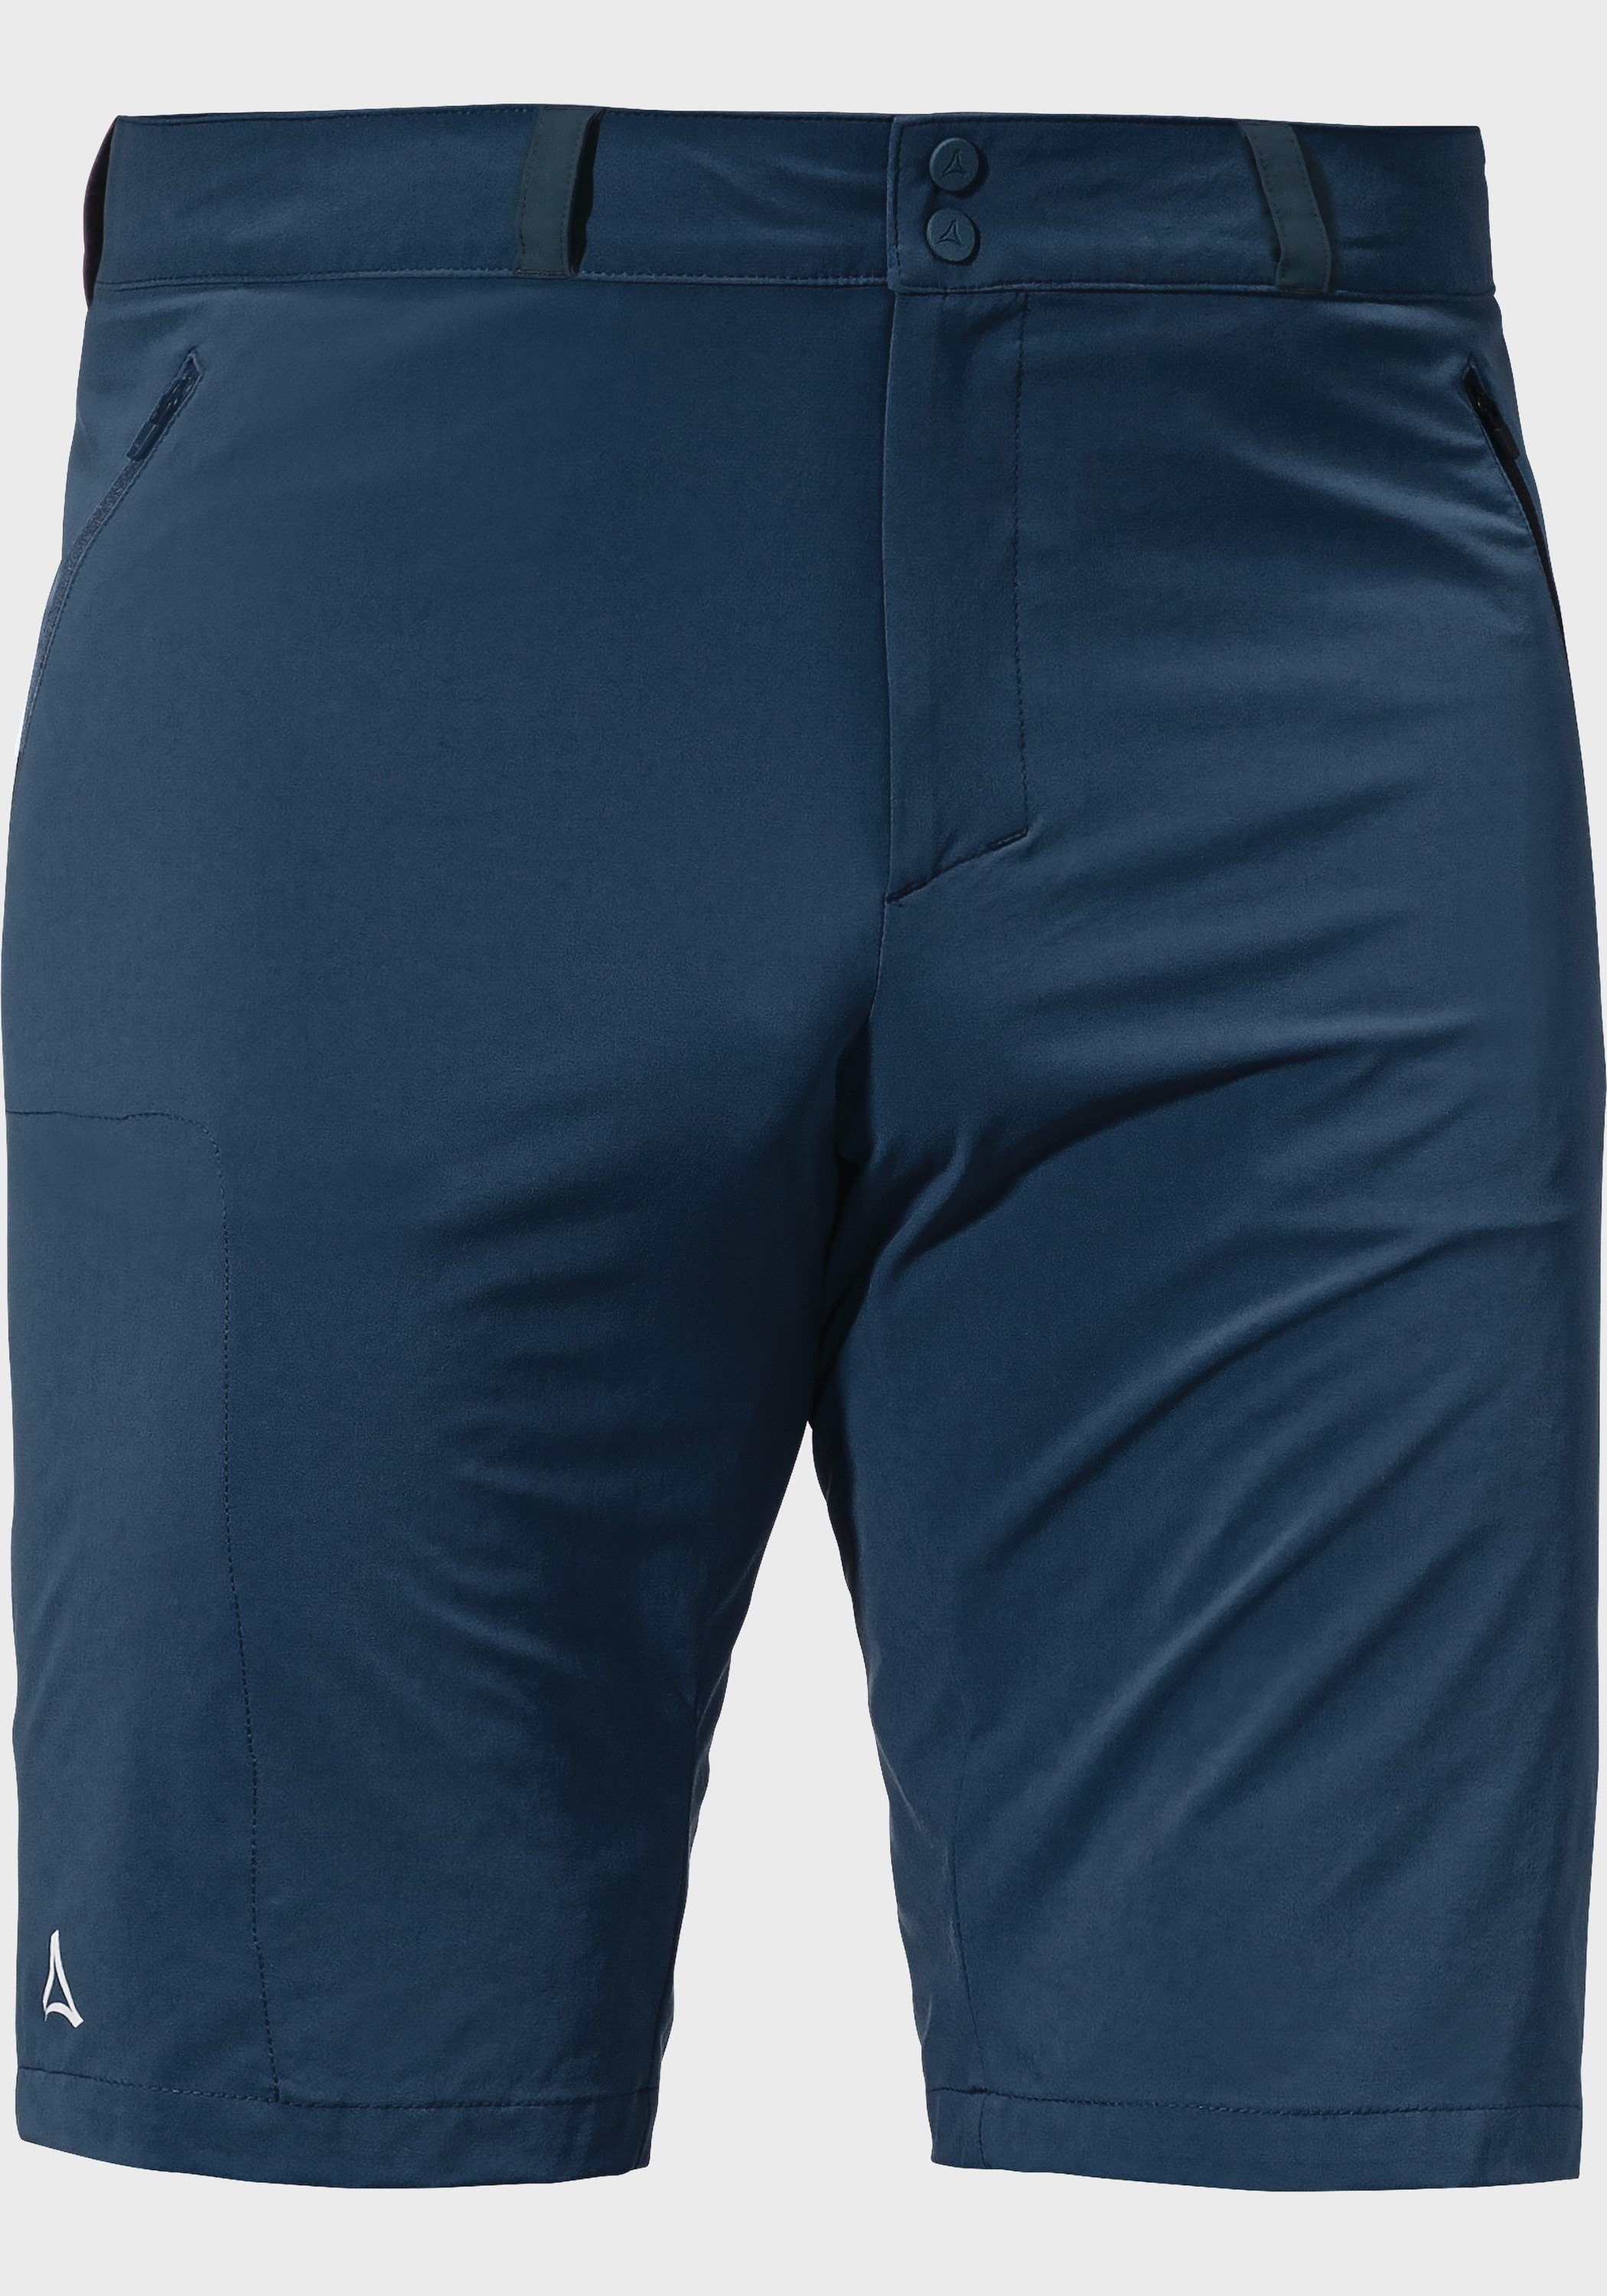 Schöffel Bermudas Shorts Hestad M blau